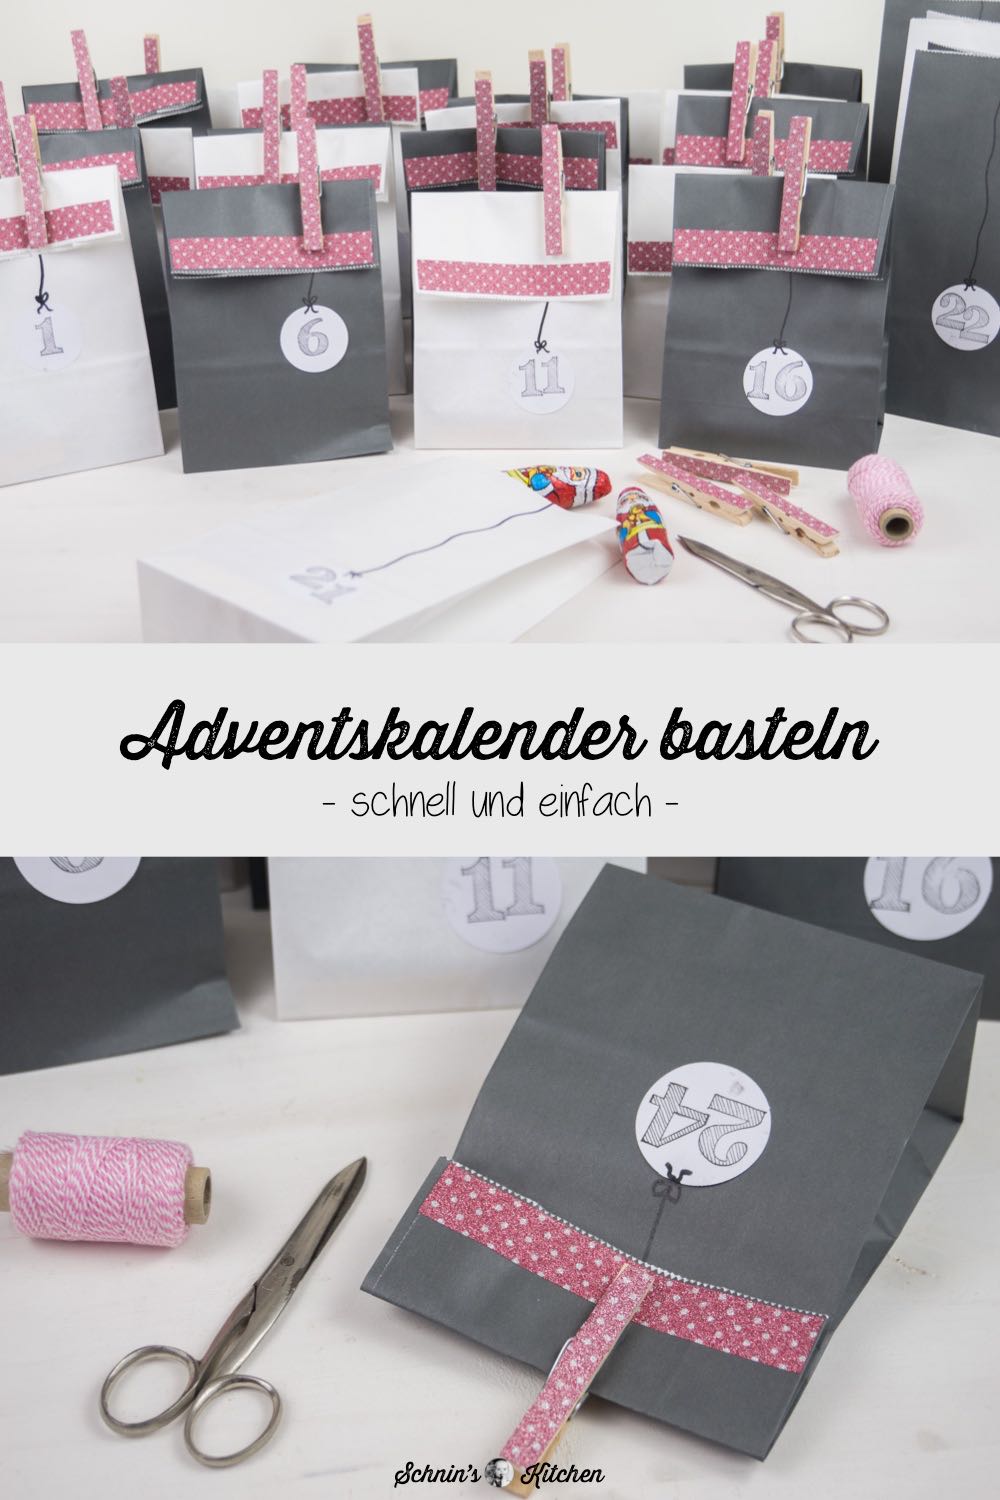 DIY Adventskalender basteln aus Papiertüten, Klebeband und Wäscheklammern | www.schninskitchen.de